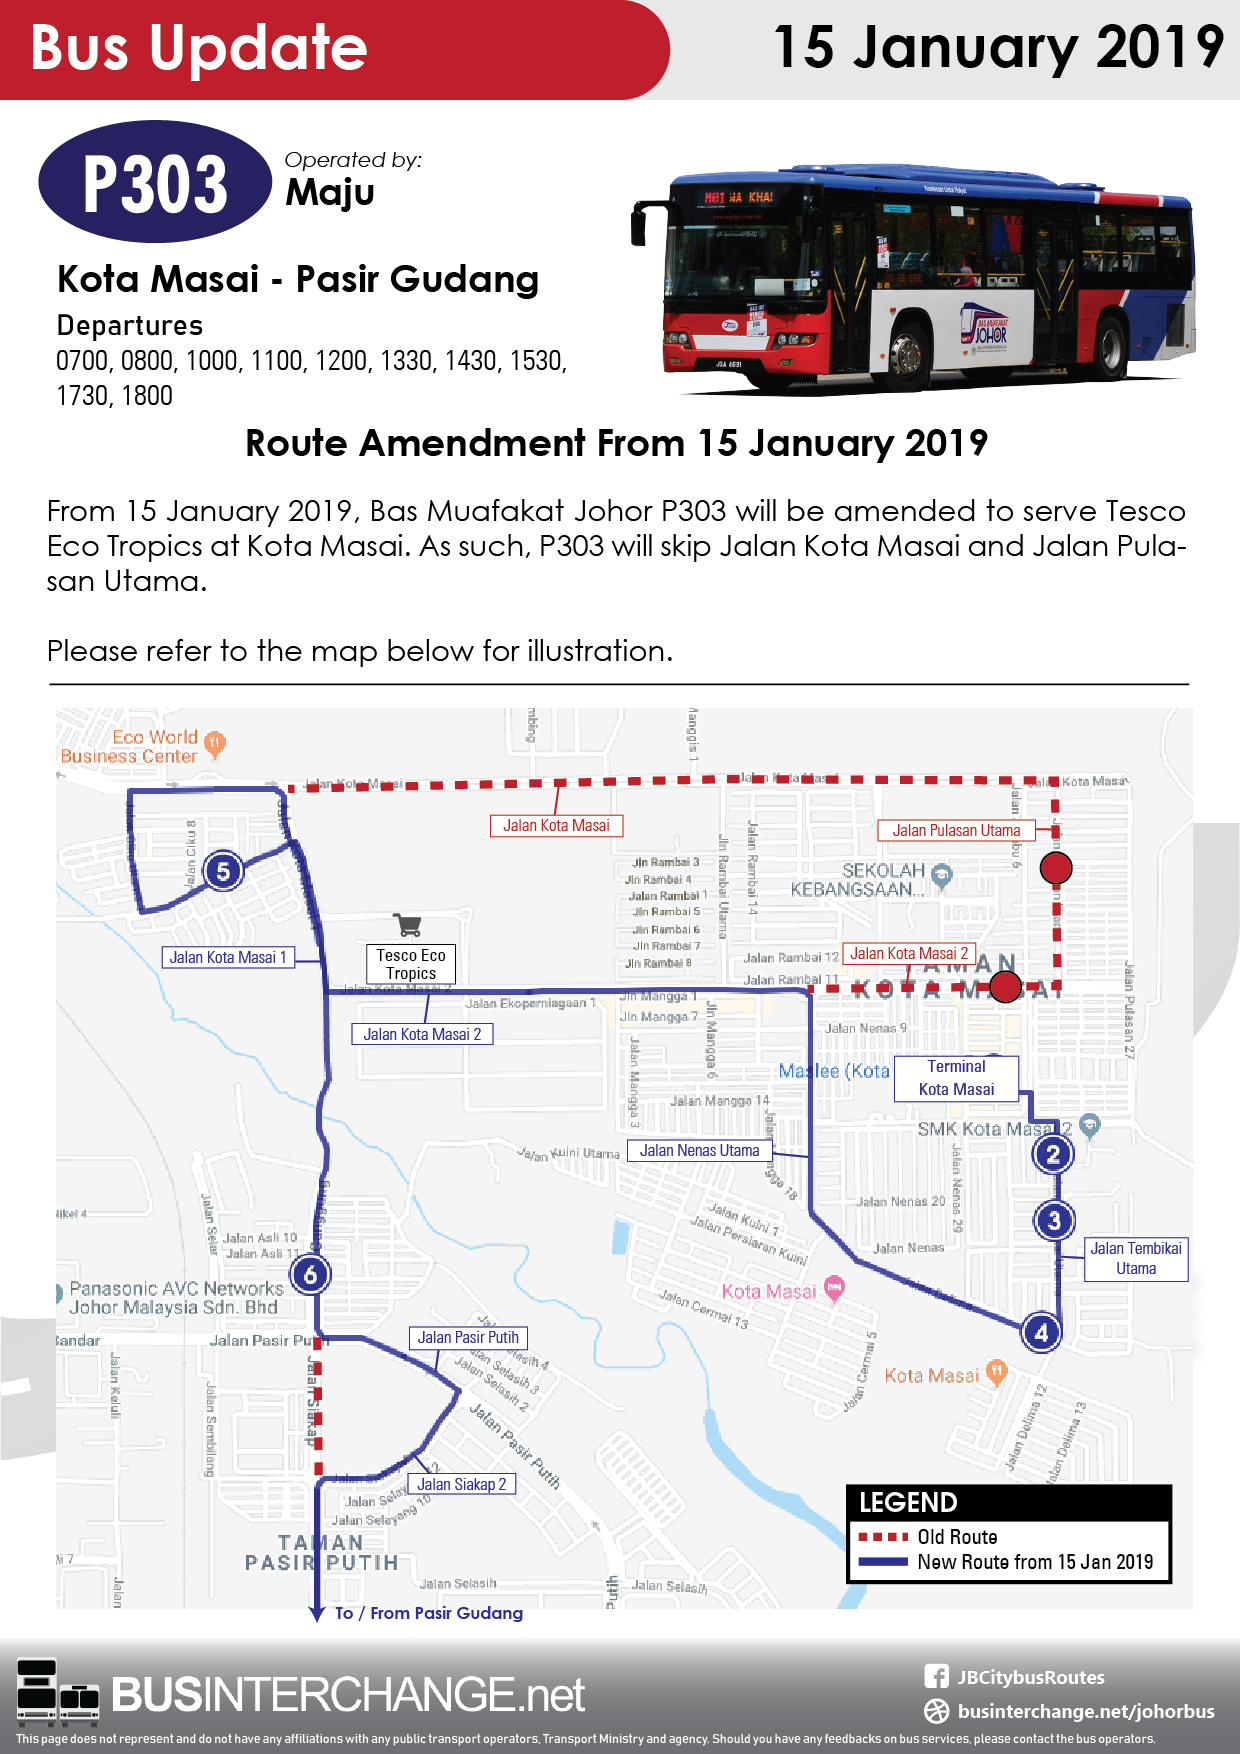 Route amendment of Bas Muafakat Johor P303 from 15 January 2019.